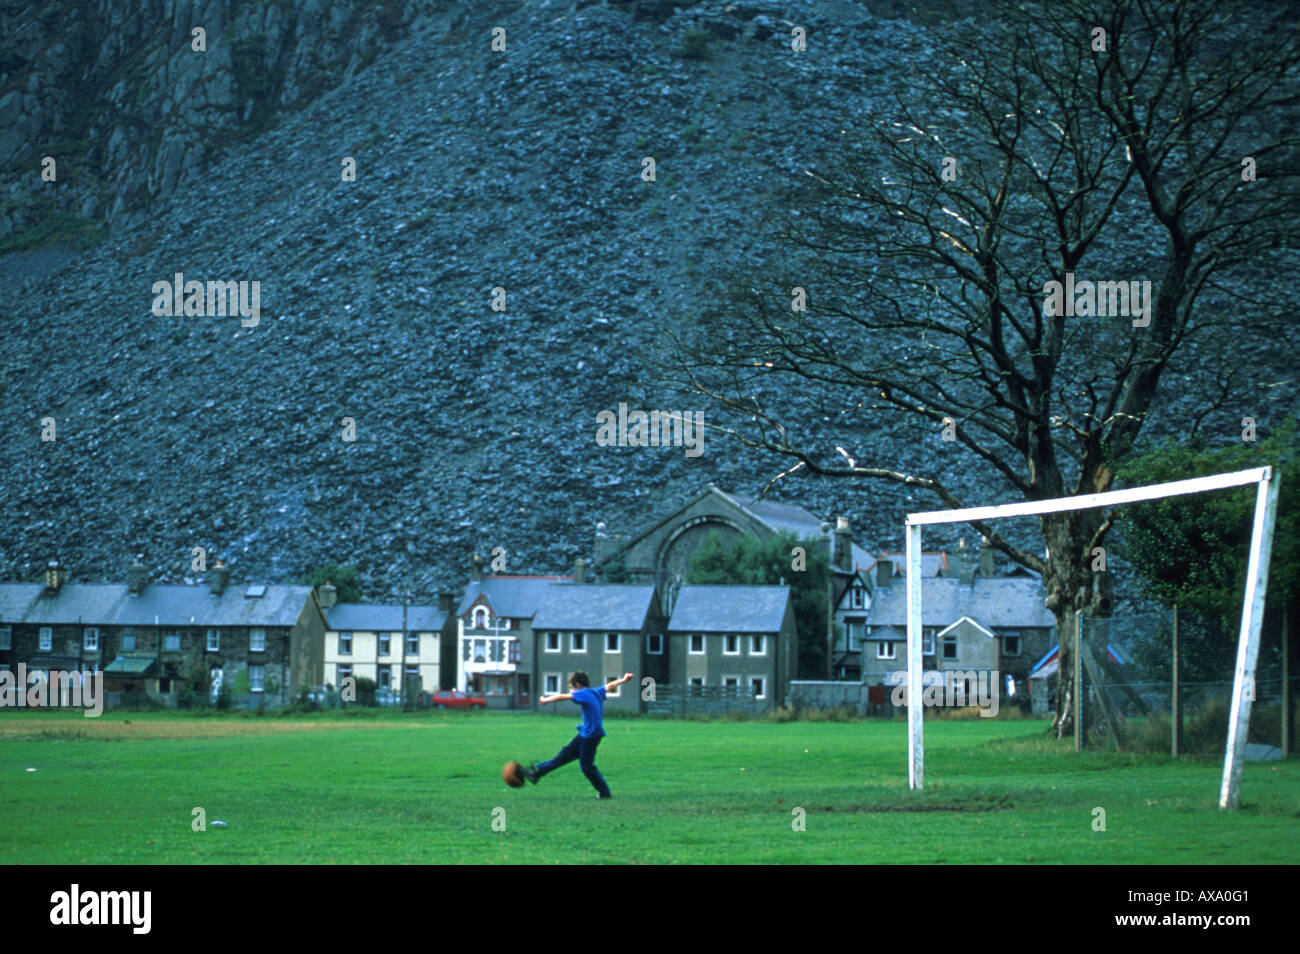 Junge spielt Fussball,, Blaenau Ffestiniog, Galles Grossbritanien Foto Stock